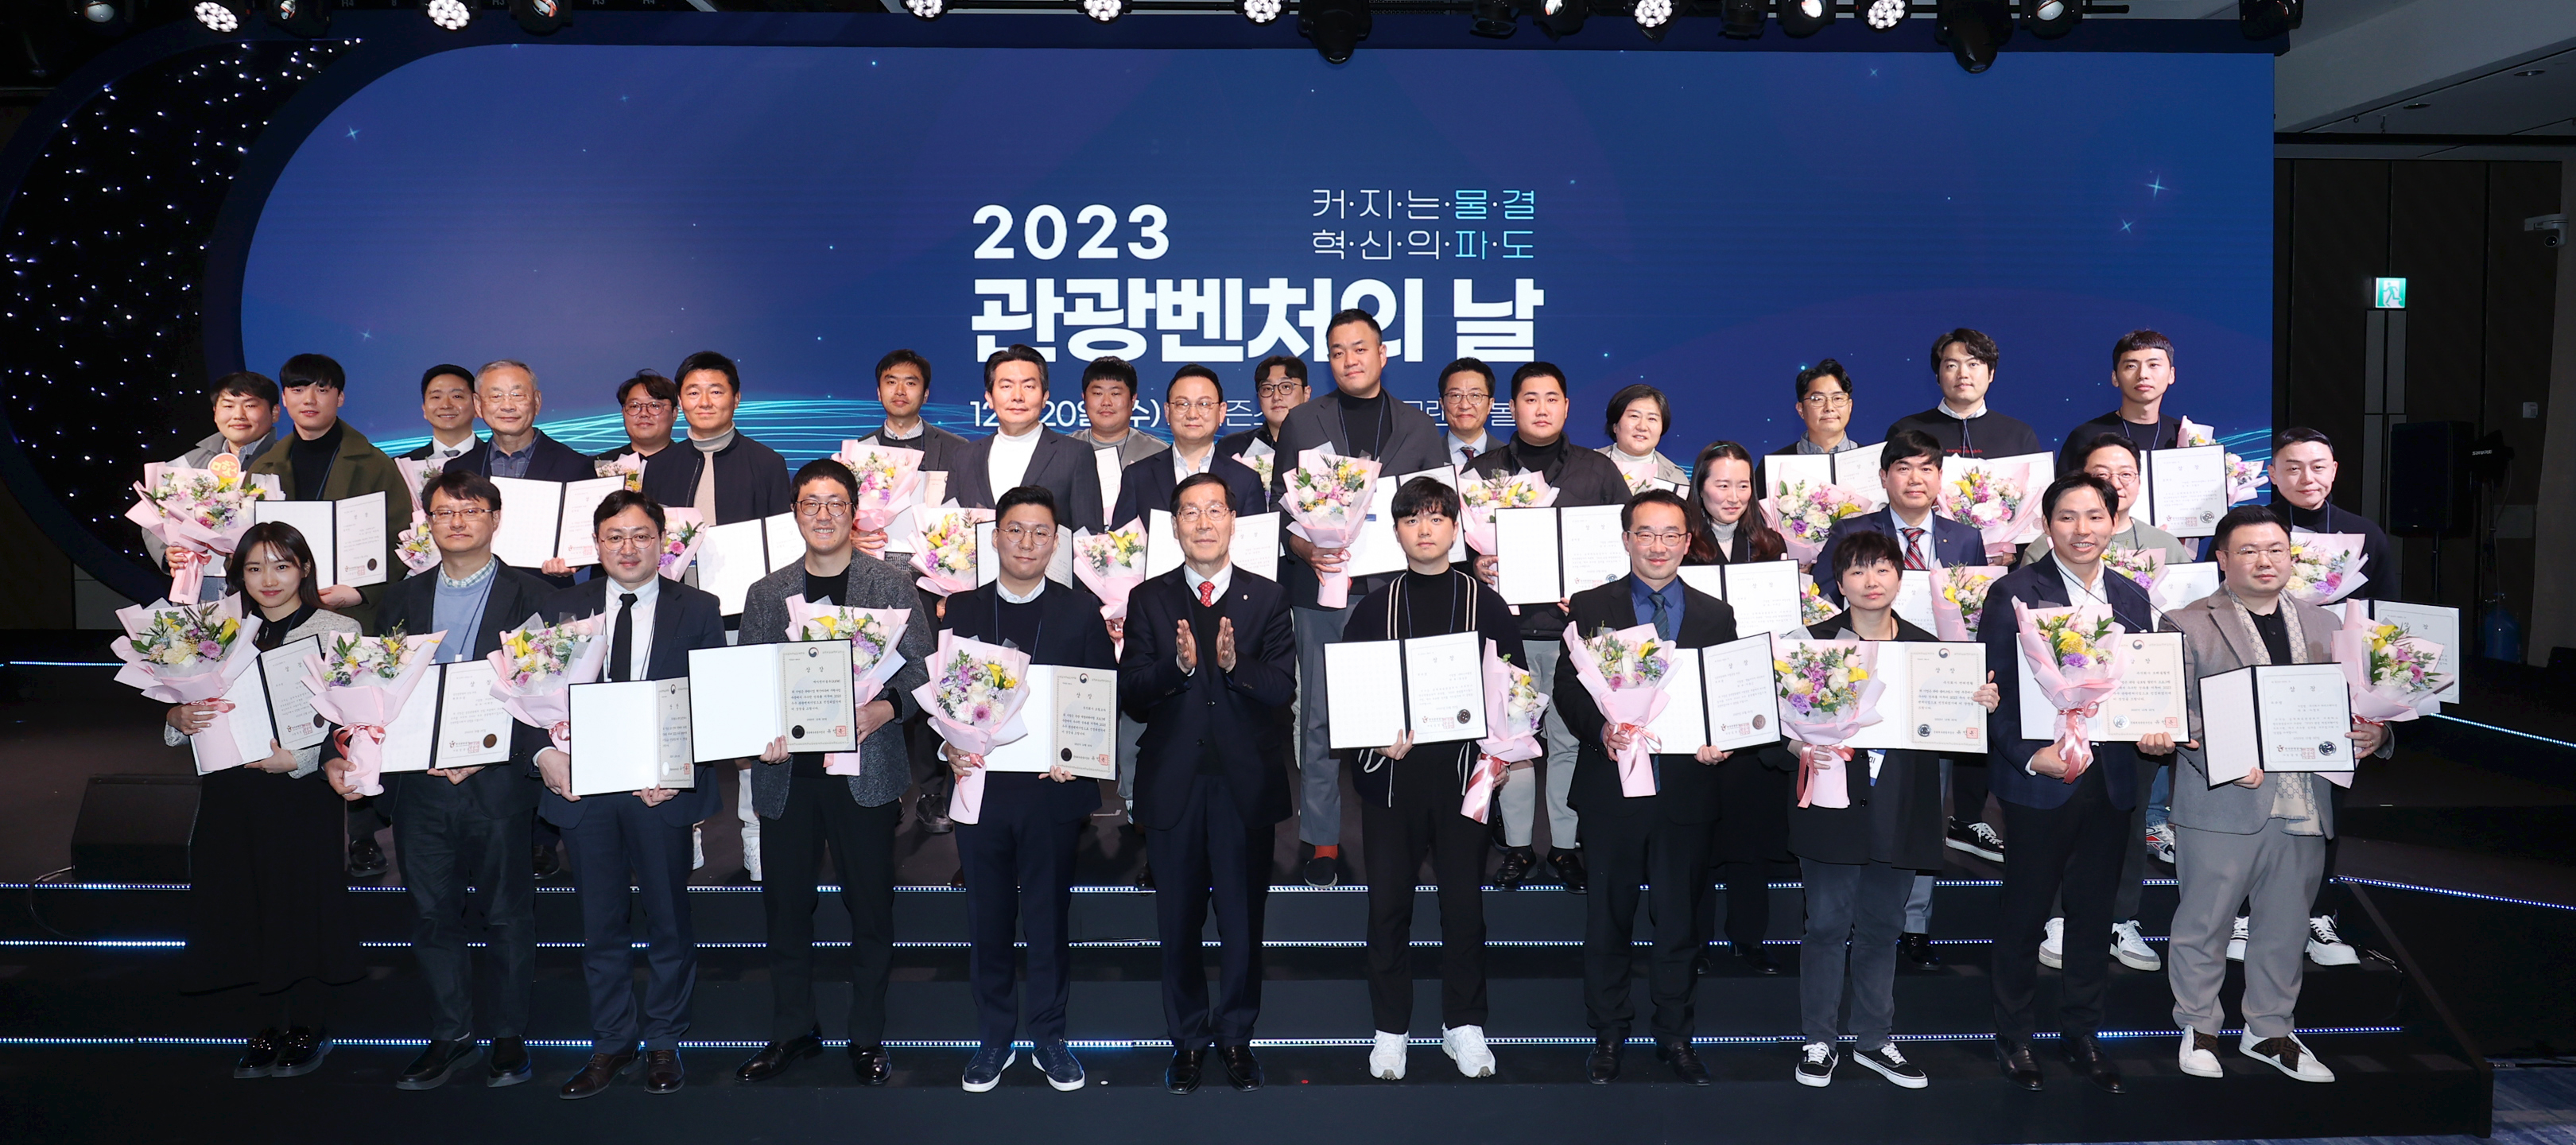 ‘2023 관광벤처의 날’ 행사에서 수상기업 대표들이 기념사진을 찍고 있다. 한국관광공사 제공.